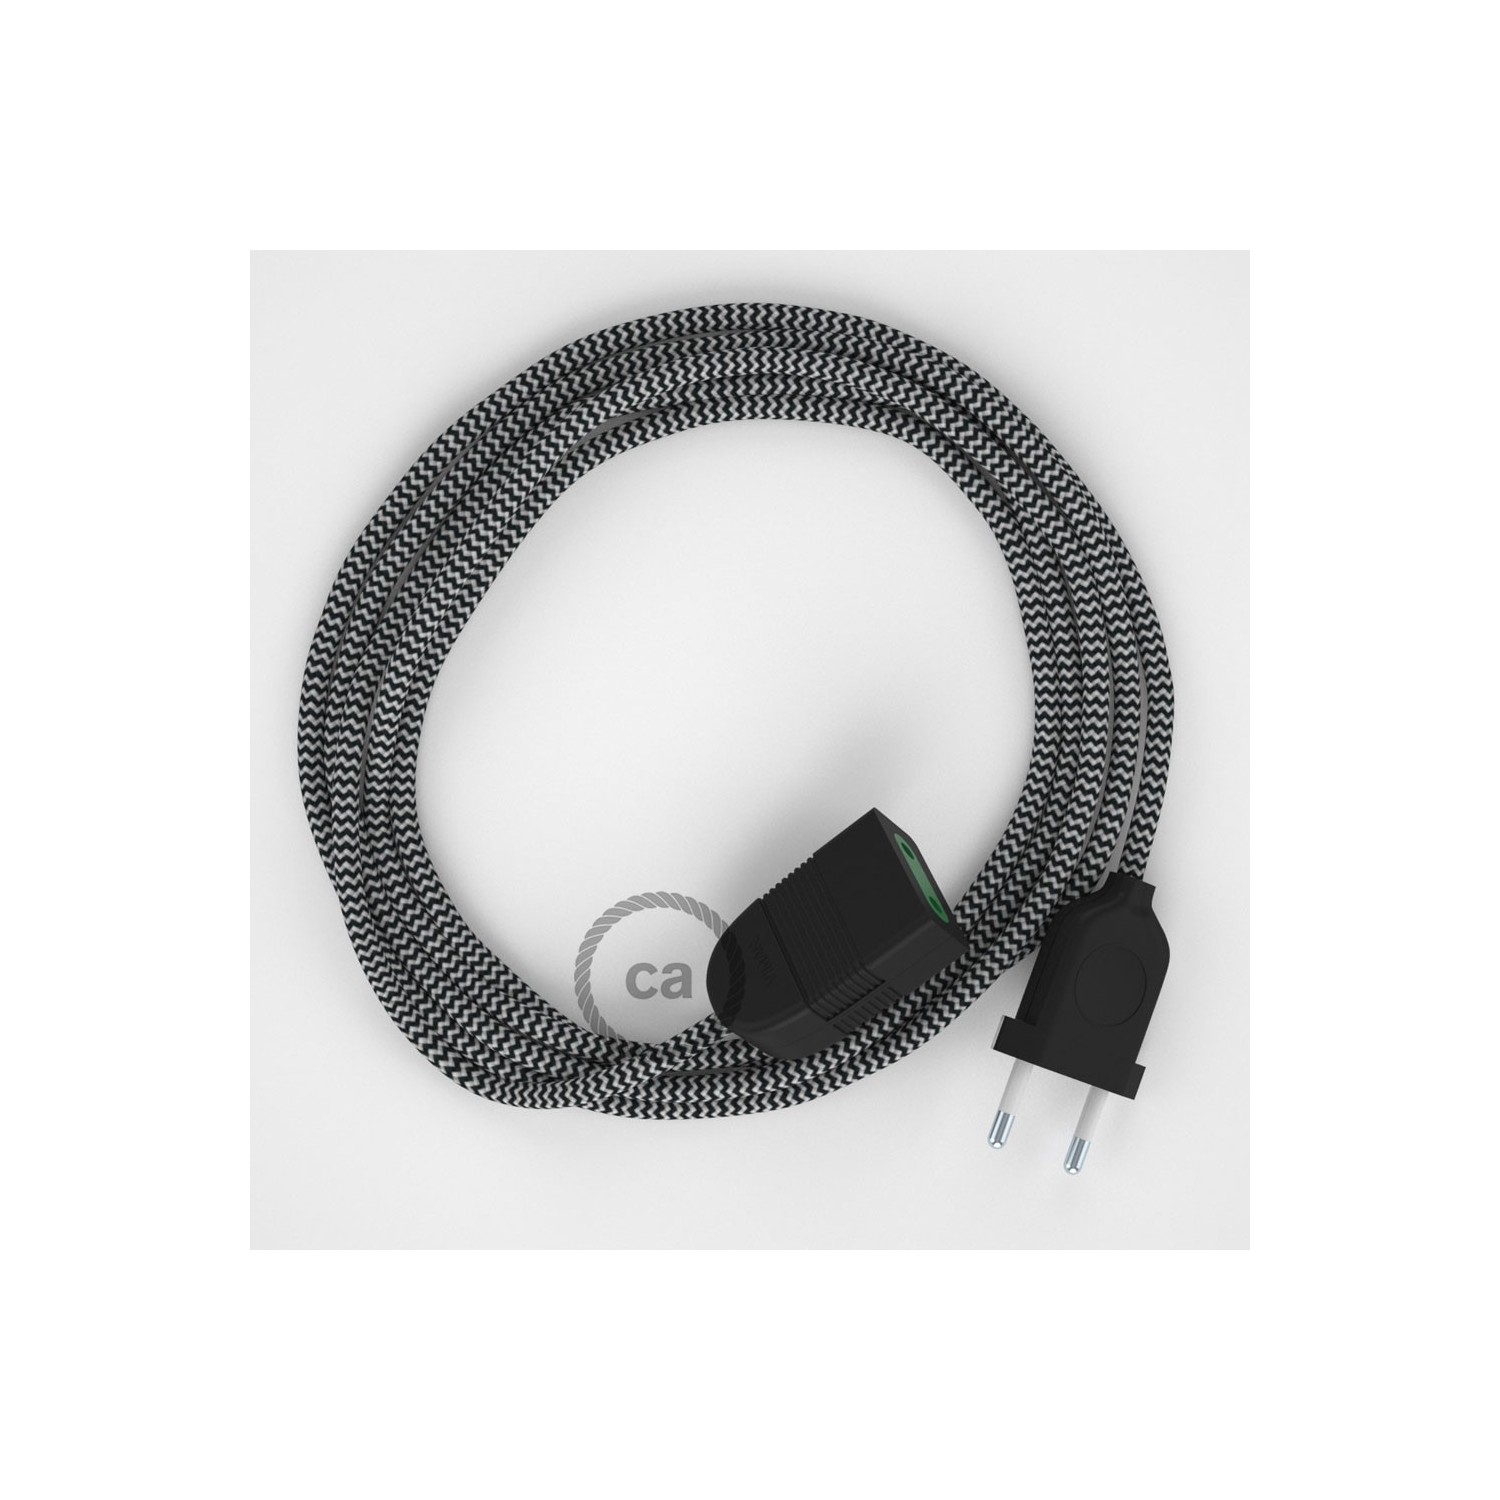 Podaljševalni kabel za napajanje (2P 10A) zigzag črn rejon RZ04 - Made in Italy